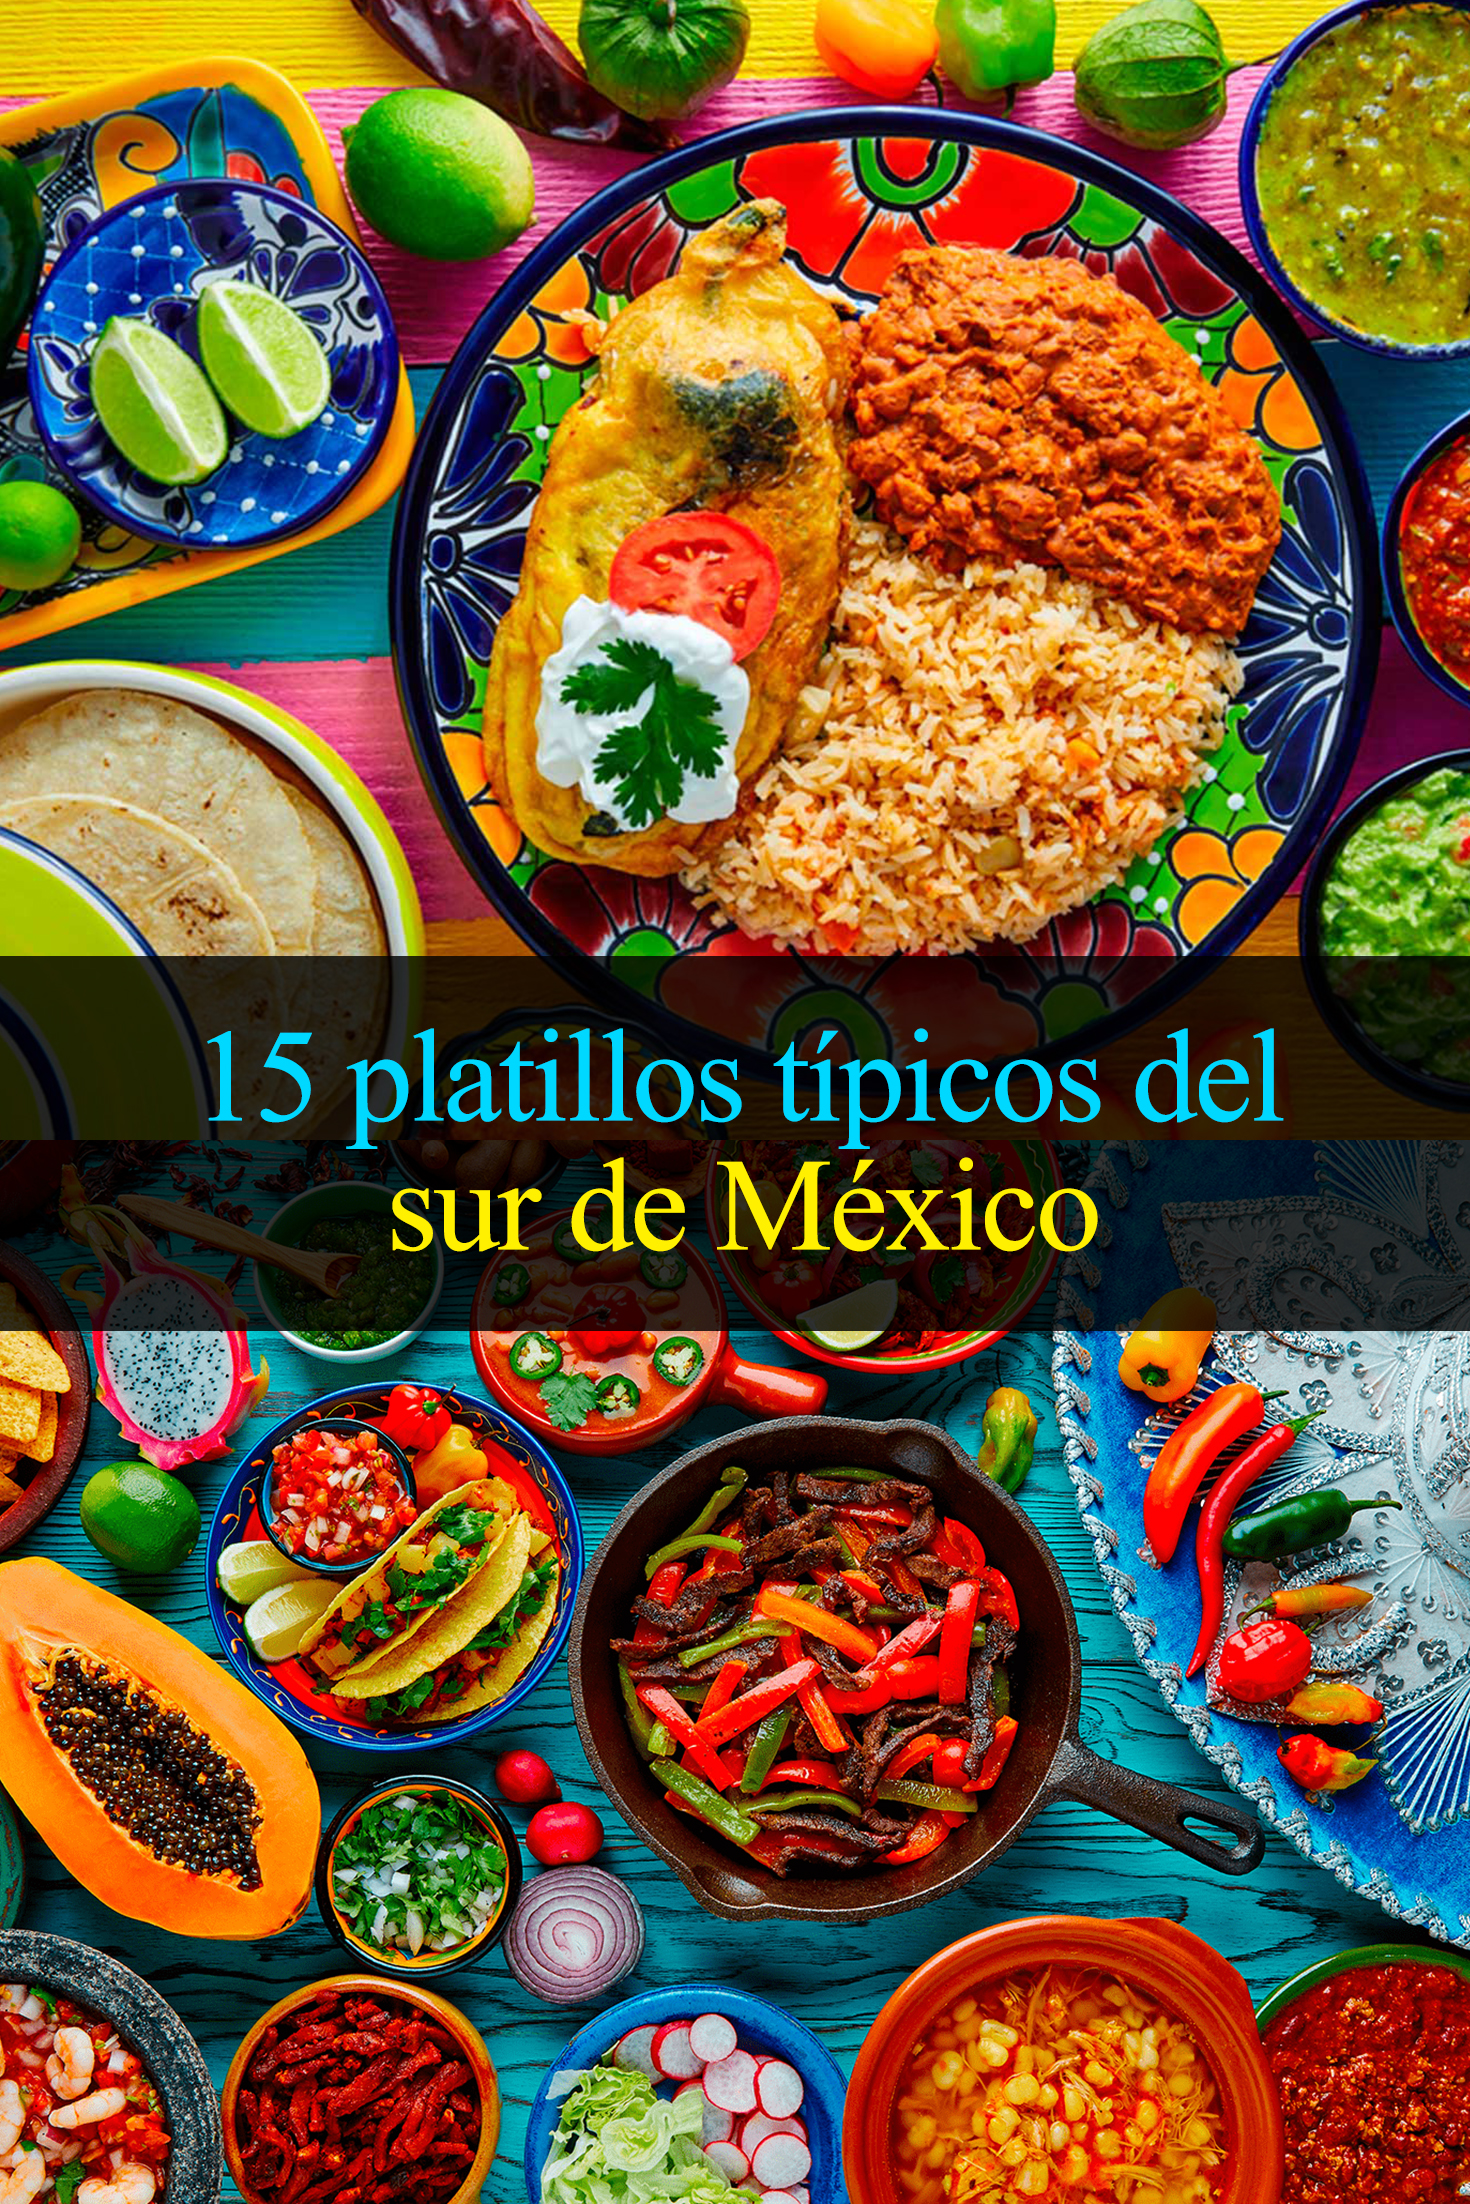 15 platillos típicos del sur de México que debes probar